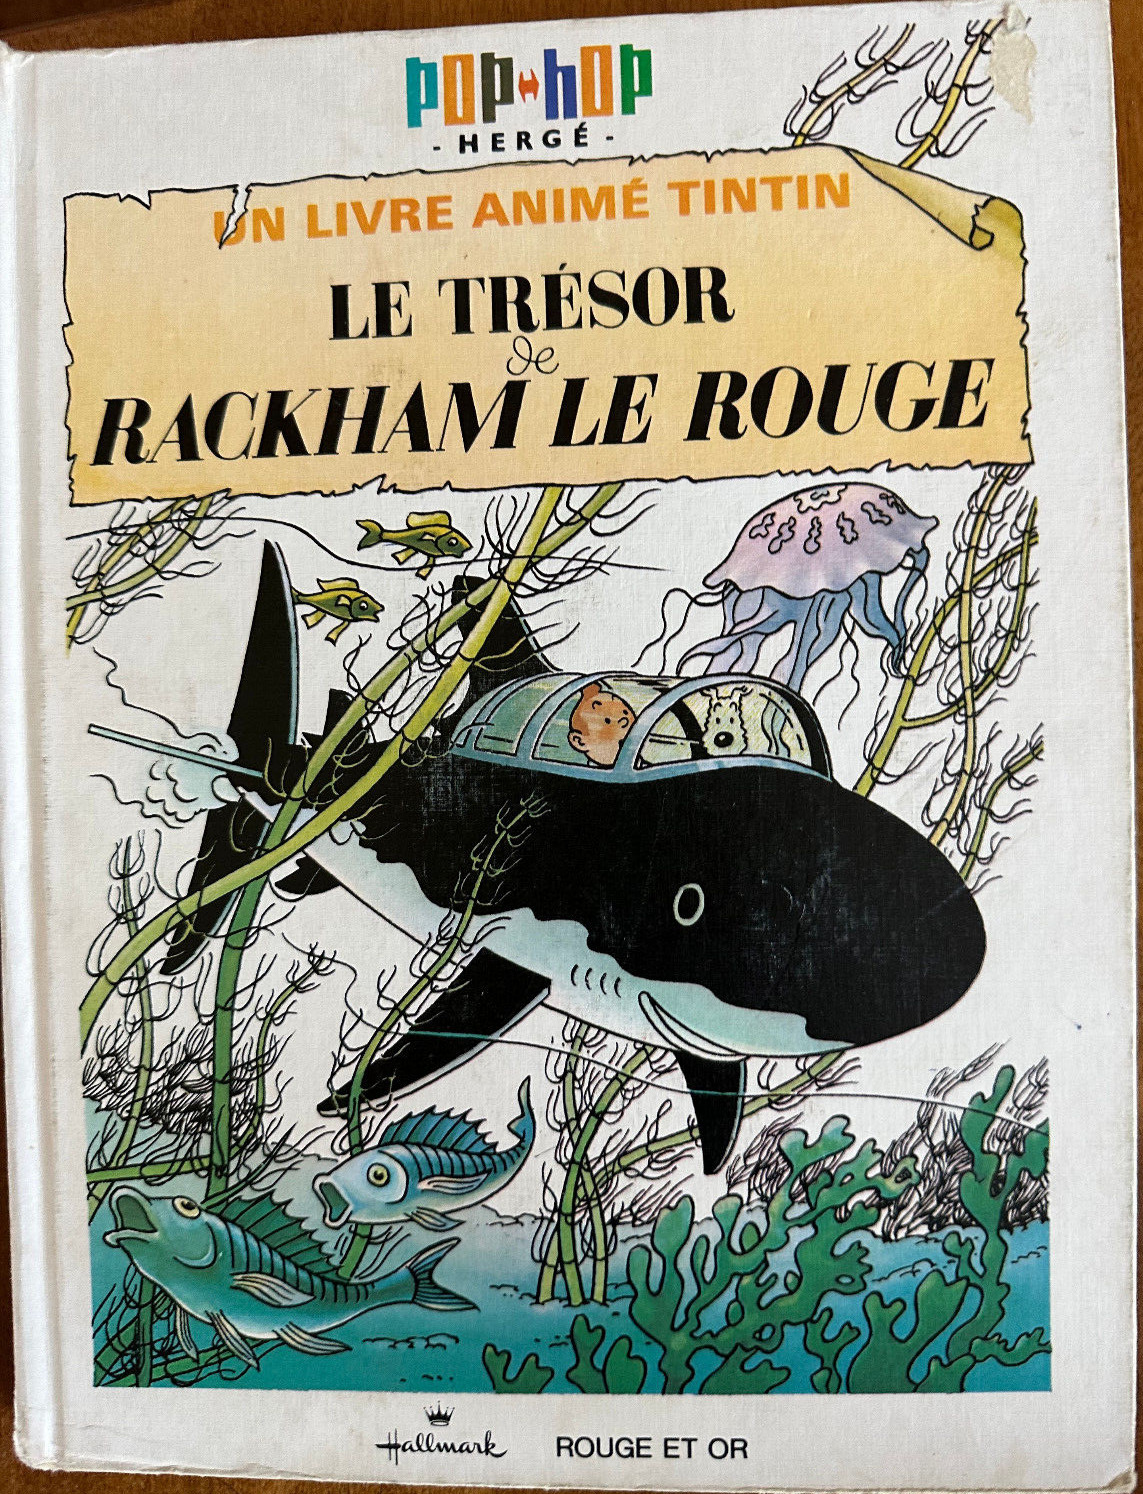 Le Trésor de Rackham Le Rouge  Un livre animé Tintin 1971